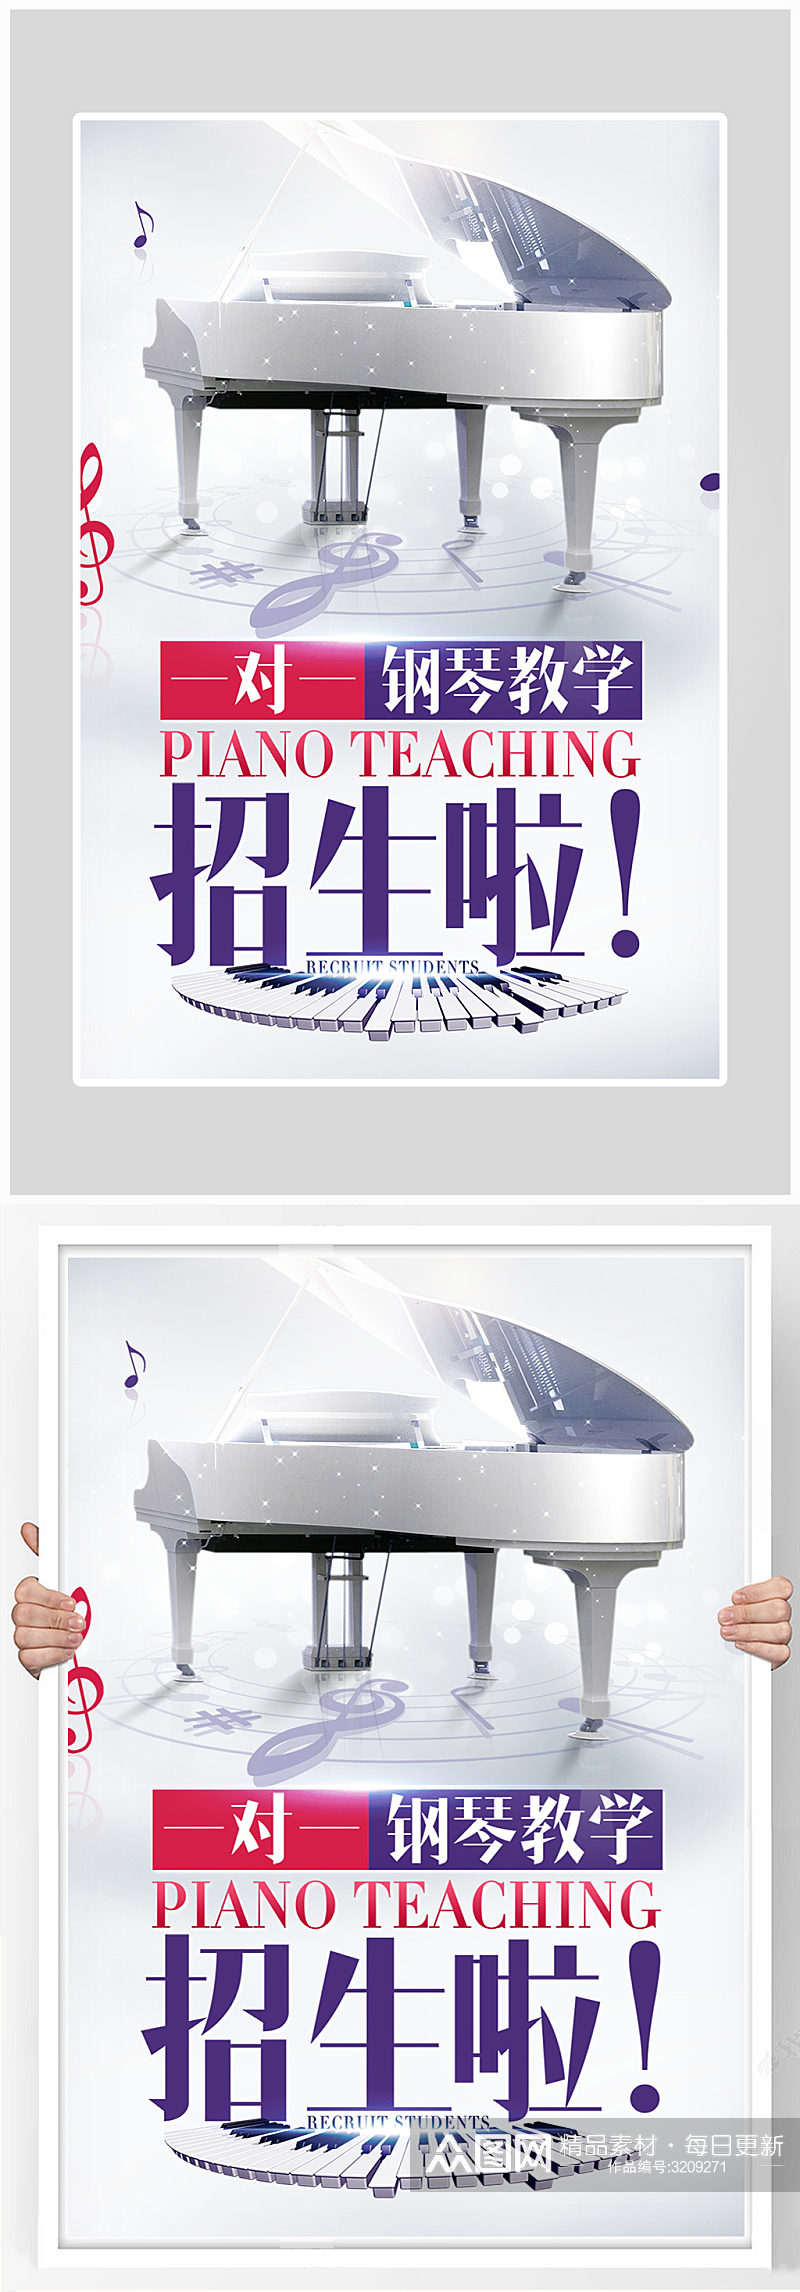 大气简约钢琴教学海报设计素材